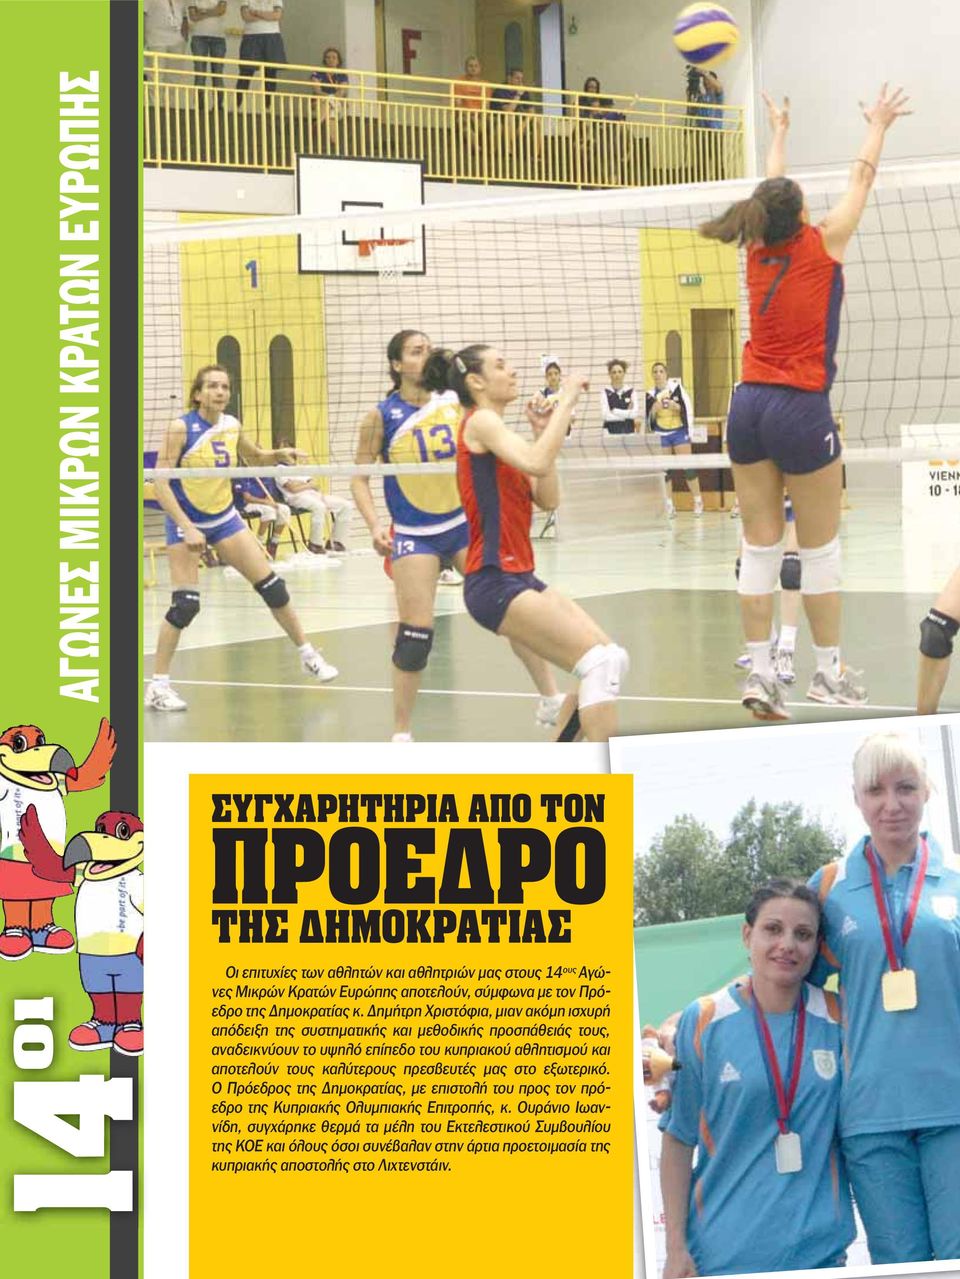 Δημήτρη Χριστόφια, μιαν ακόμη ισχυρή απόδειξη της συστηματικής και μεθοδικής προσπάθειάς τους, αναδεικνύουν το υψηλό επίπεδο του κυπριακού αθλητισμού και αποτελούν τους